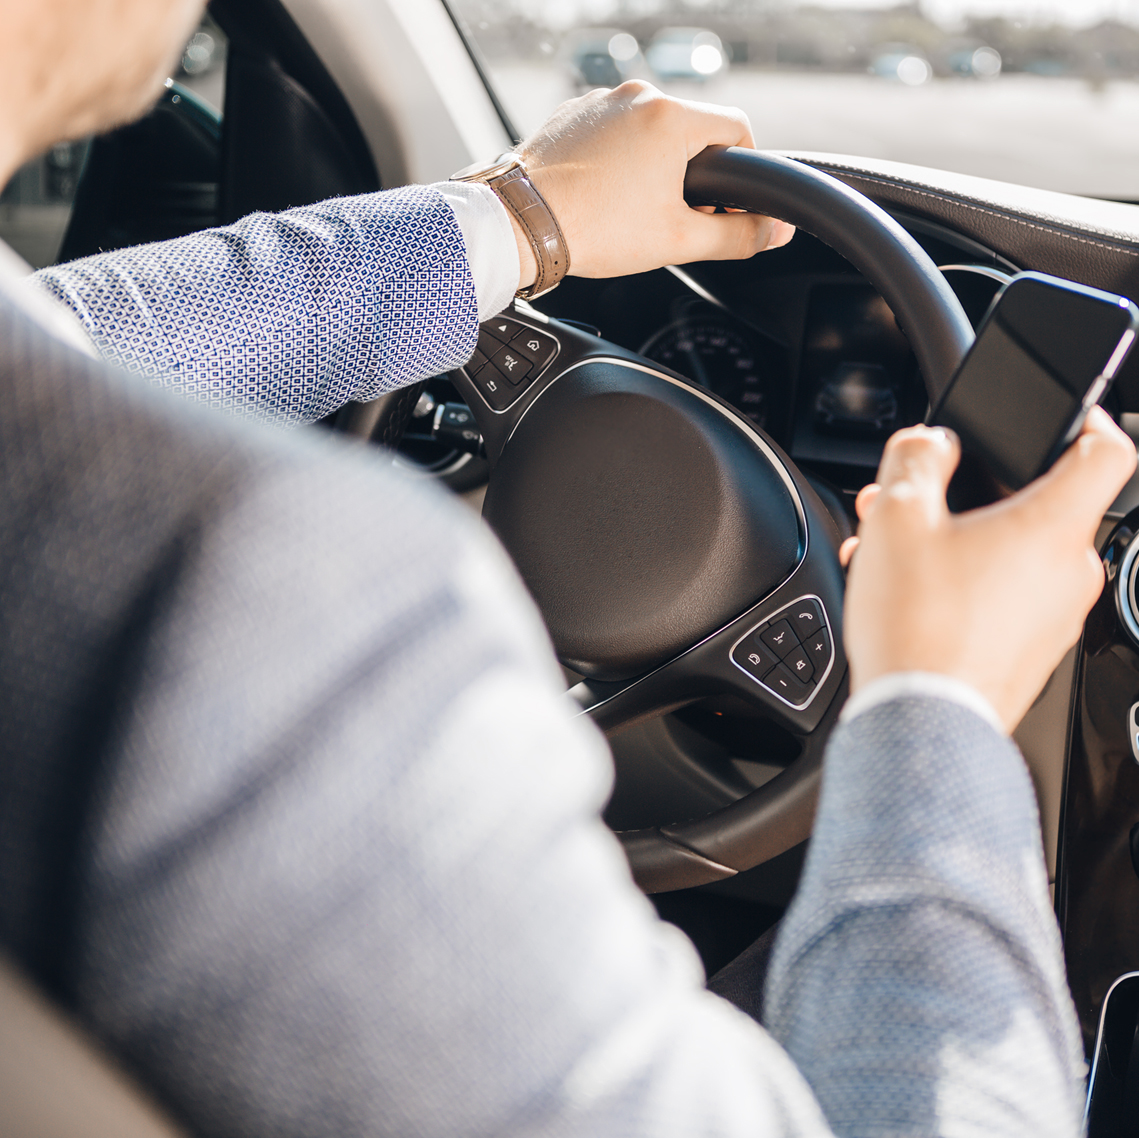 ¿Sabes cuáles son las principales causas de distracción más habituales al conducir?